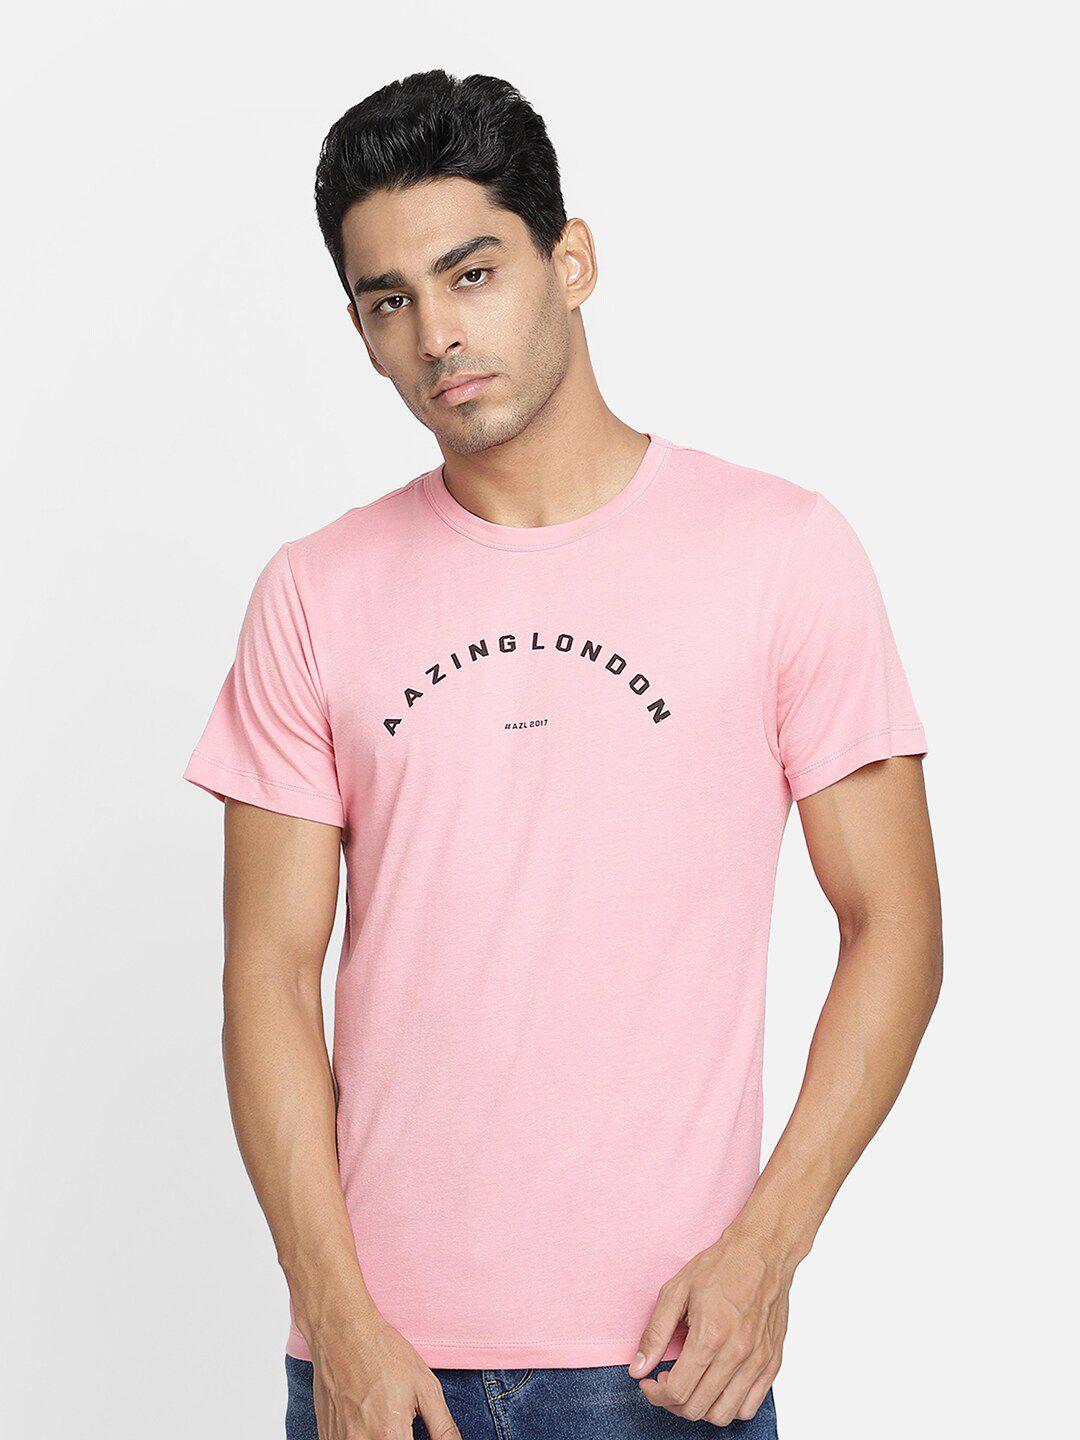 aazing london men pink & black typography printed t-shirt